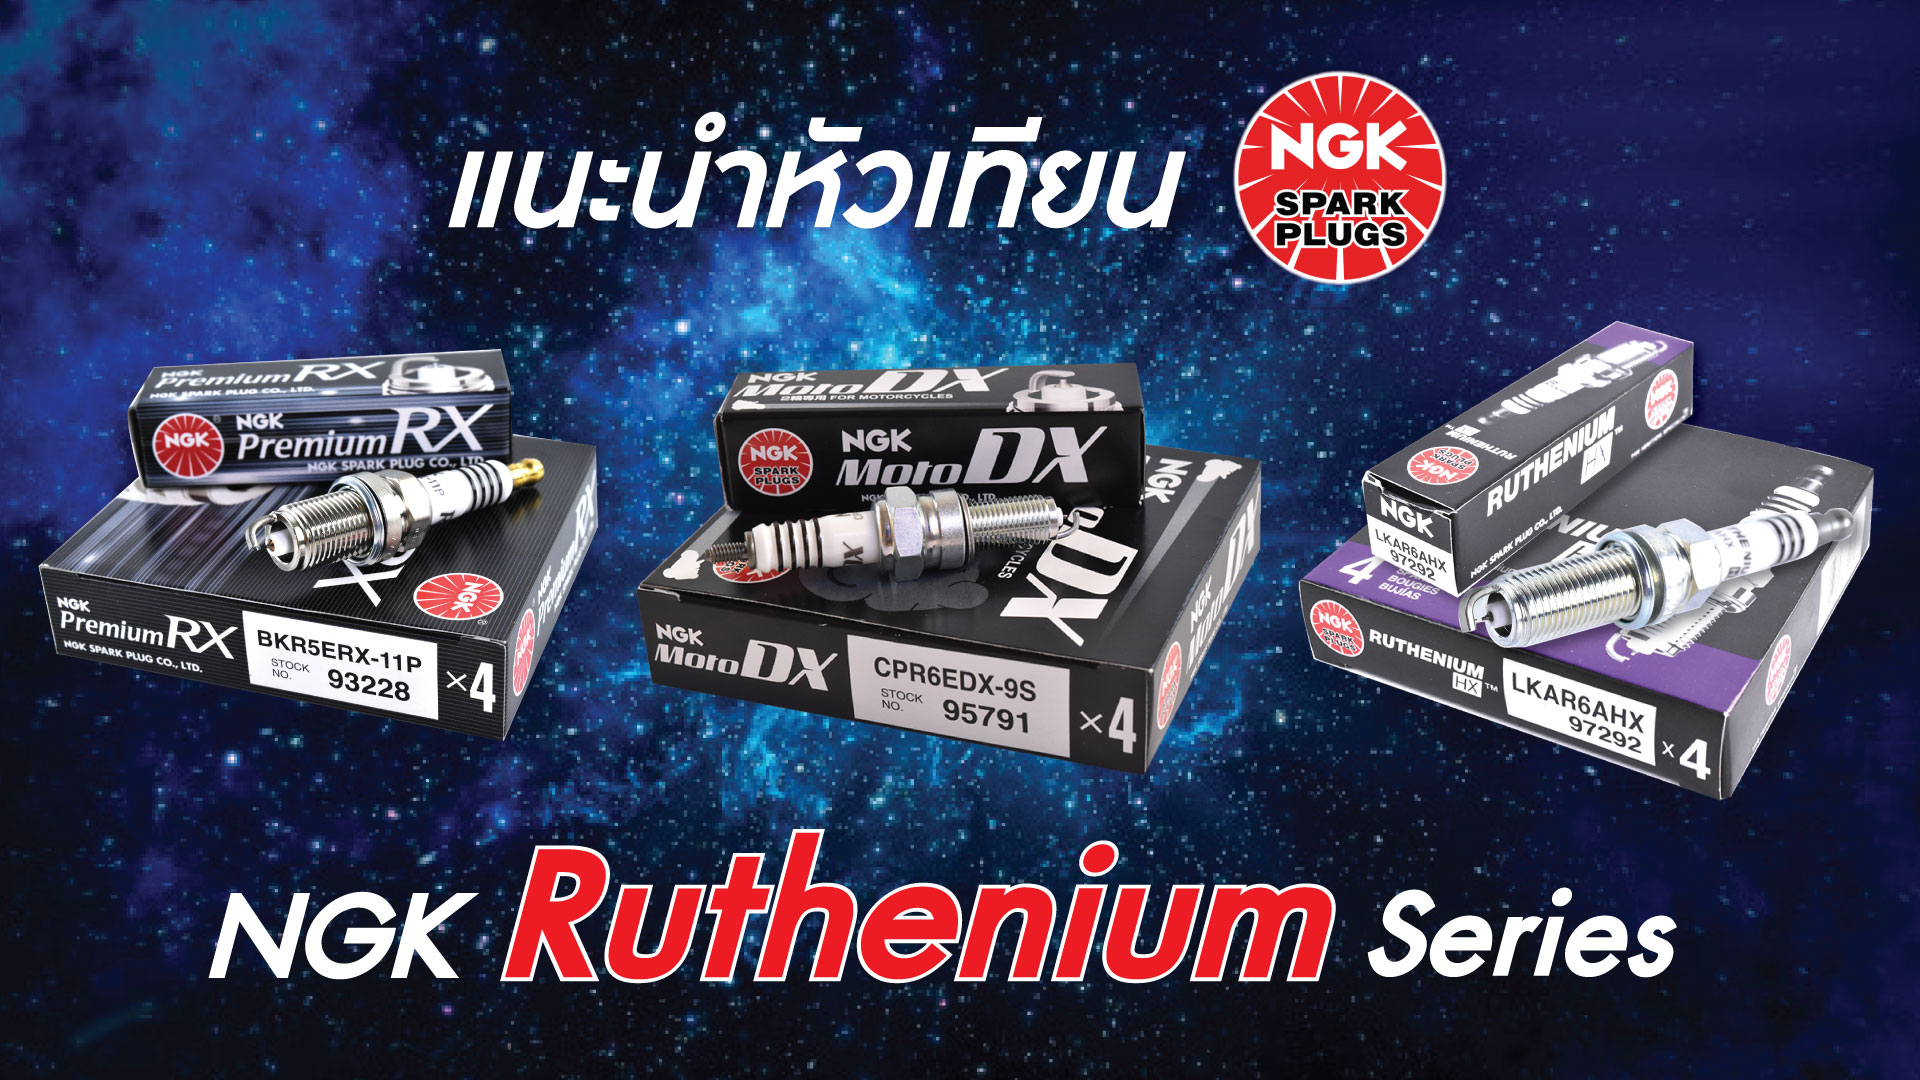 แนะนำหัวเทียน NGK Ruthenium Series 3 รุ่น ⚡ MotoDX ⚡ Premium RX ⚡ Ruthenium HX